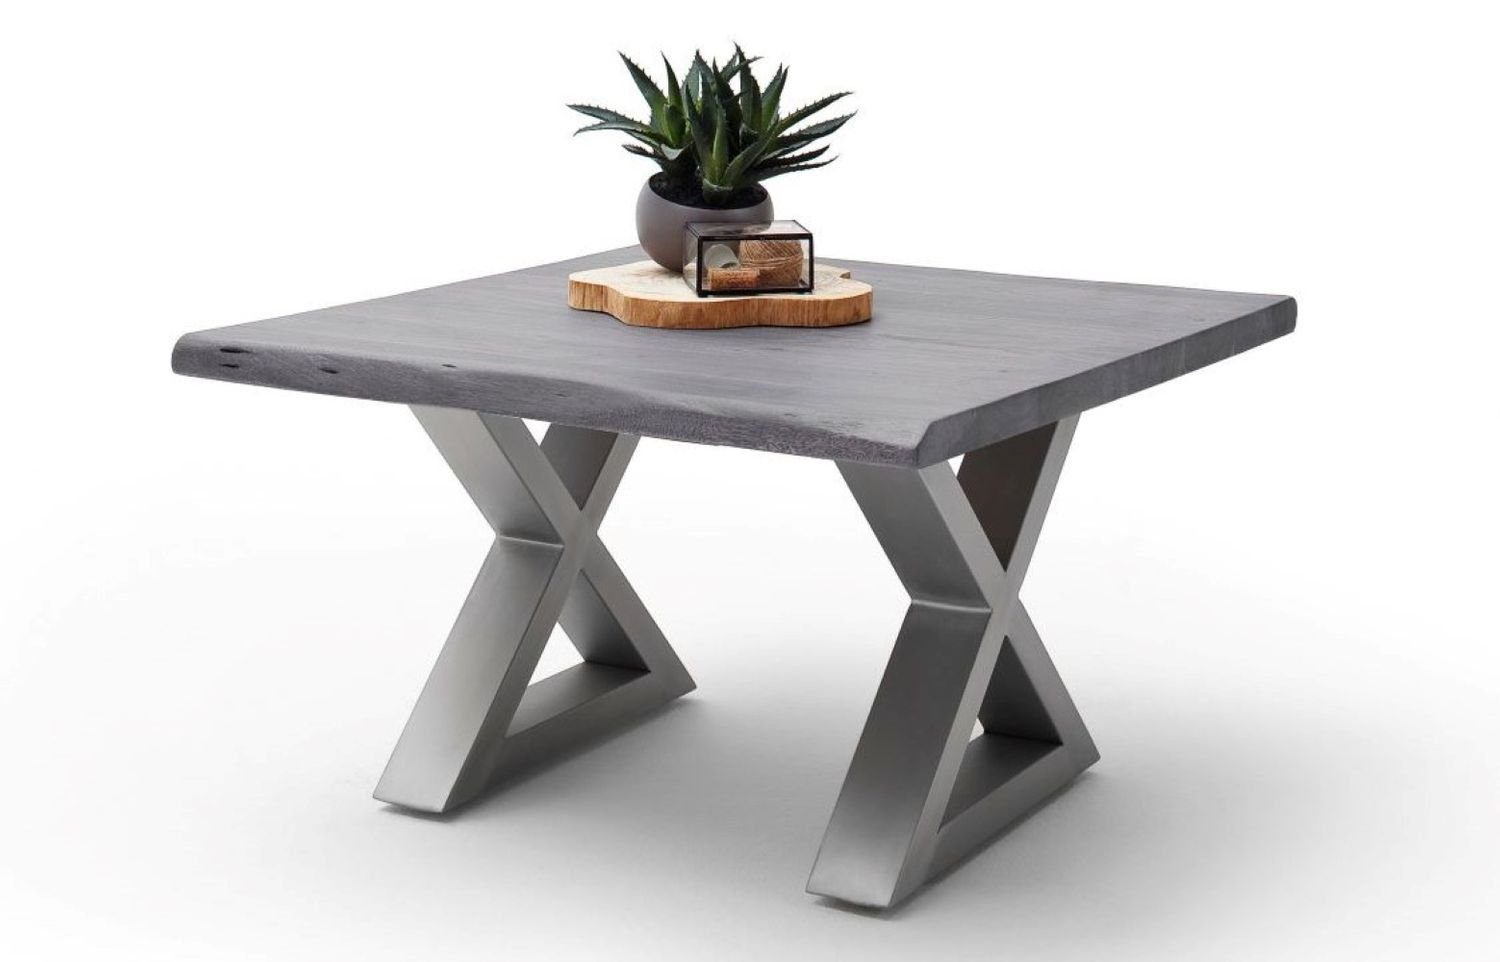 MCA furniture Couchtisch Mit Materialien Sorgfalt quadratisch grau, Baumkante Akazie-massiv aus gefertigt! hochwertigen Cartagen, X-Form